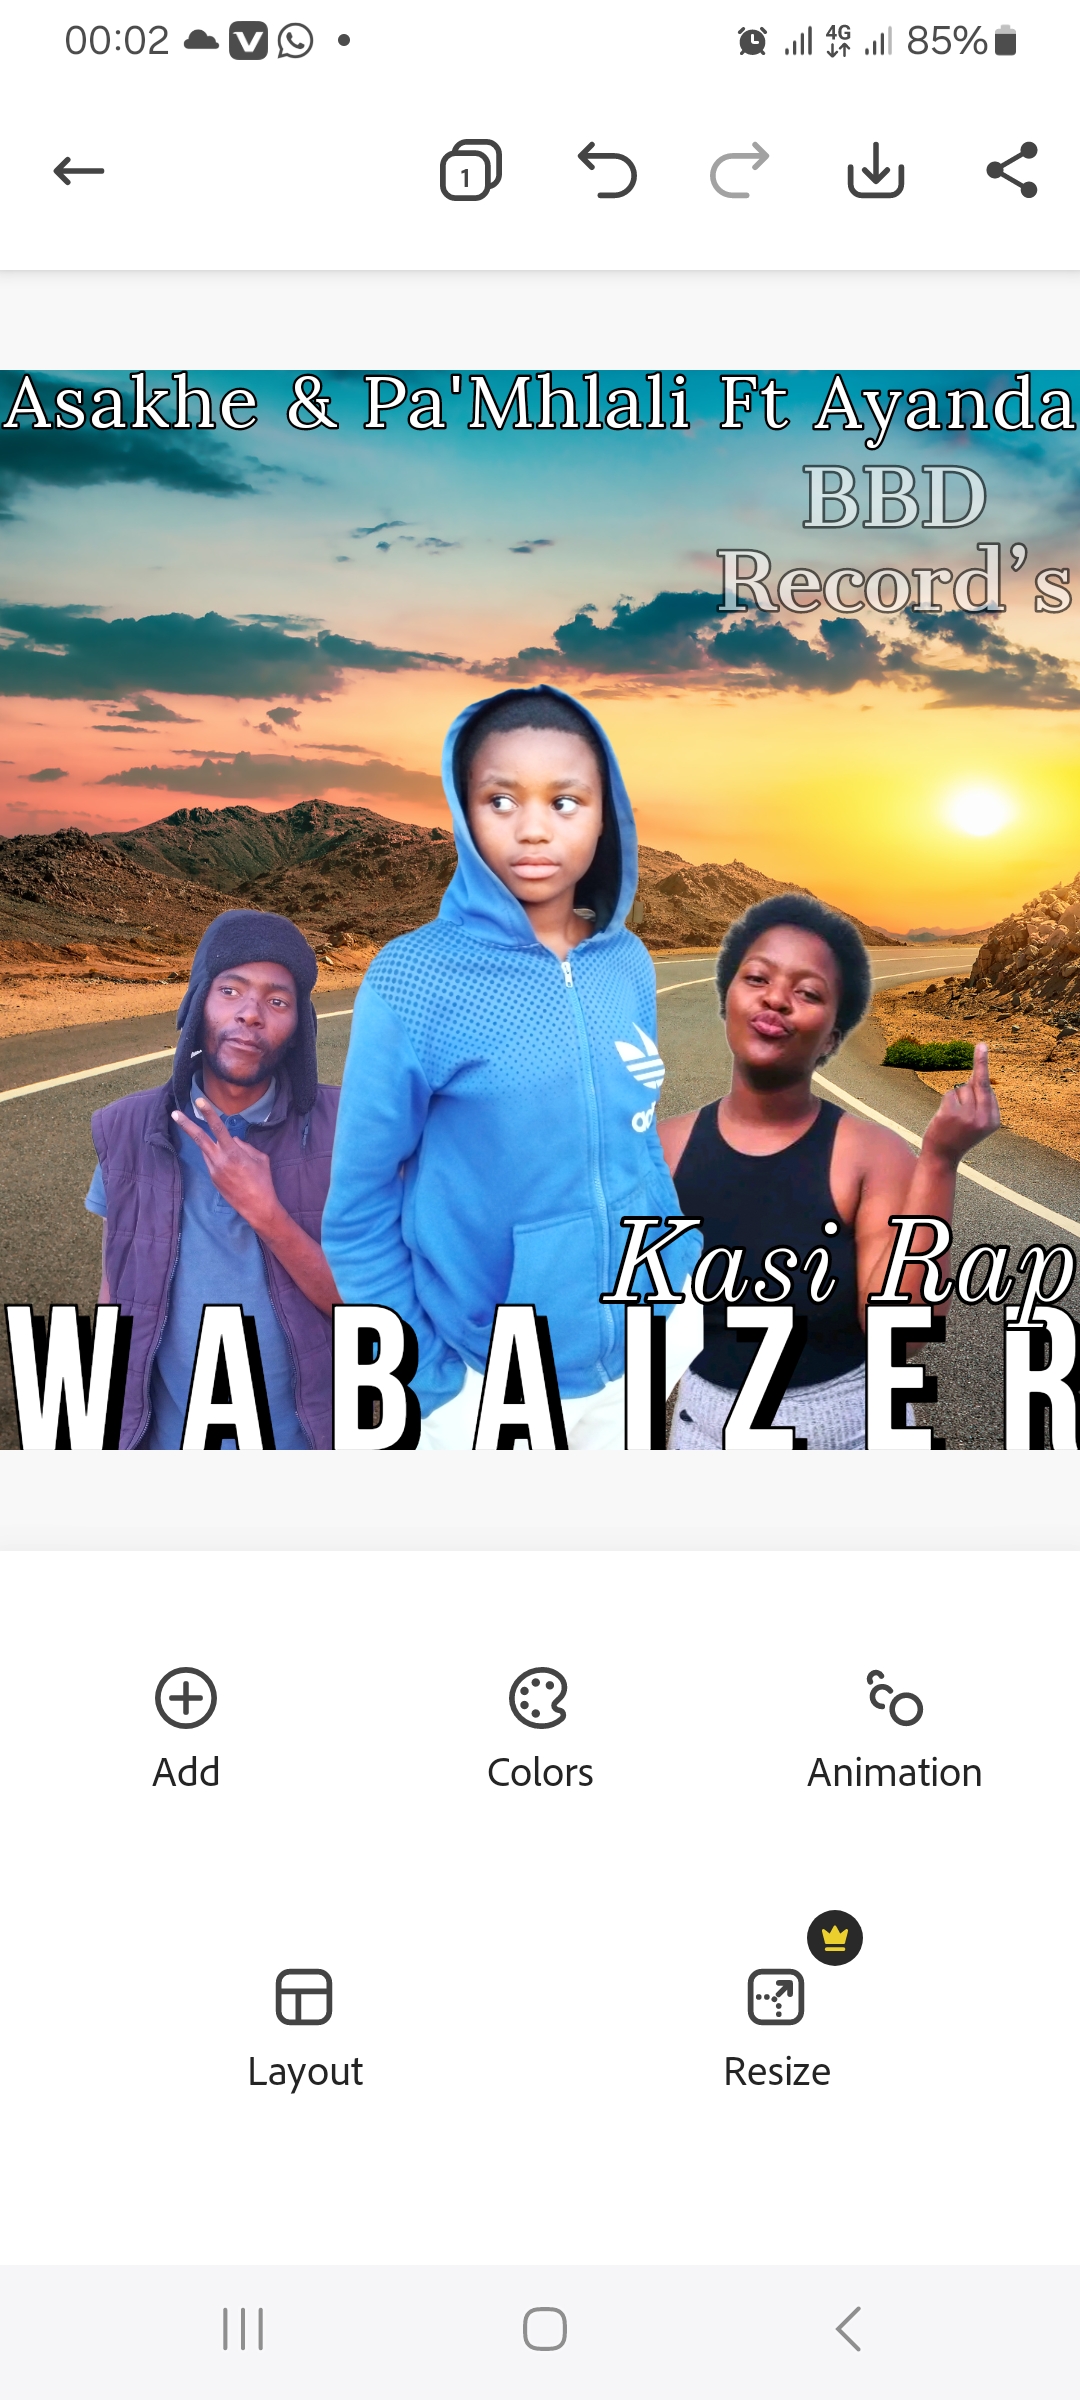 Wabaizer - Asakhe & Pa'Mhlali Ft Ayand